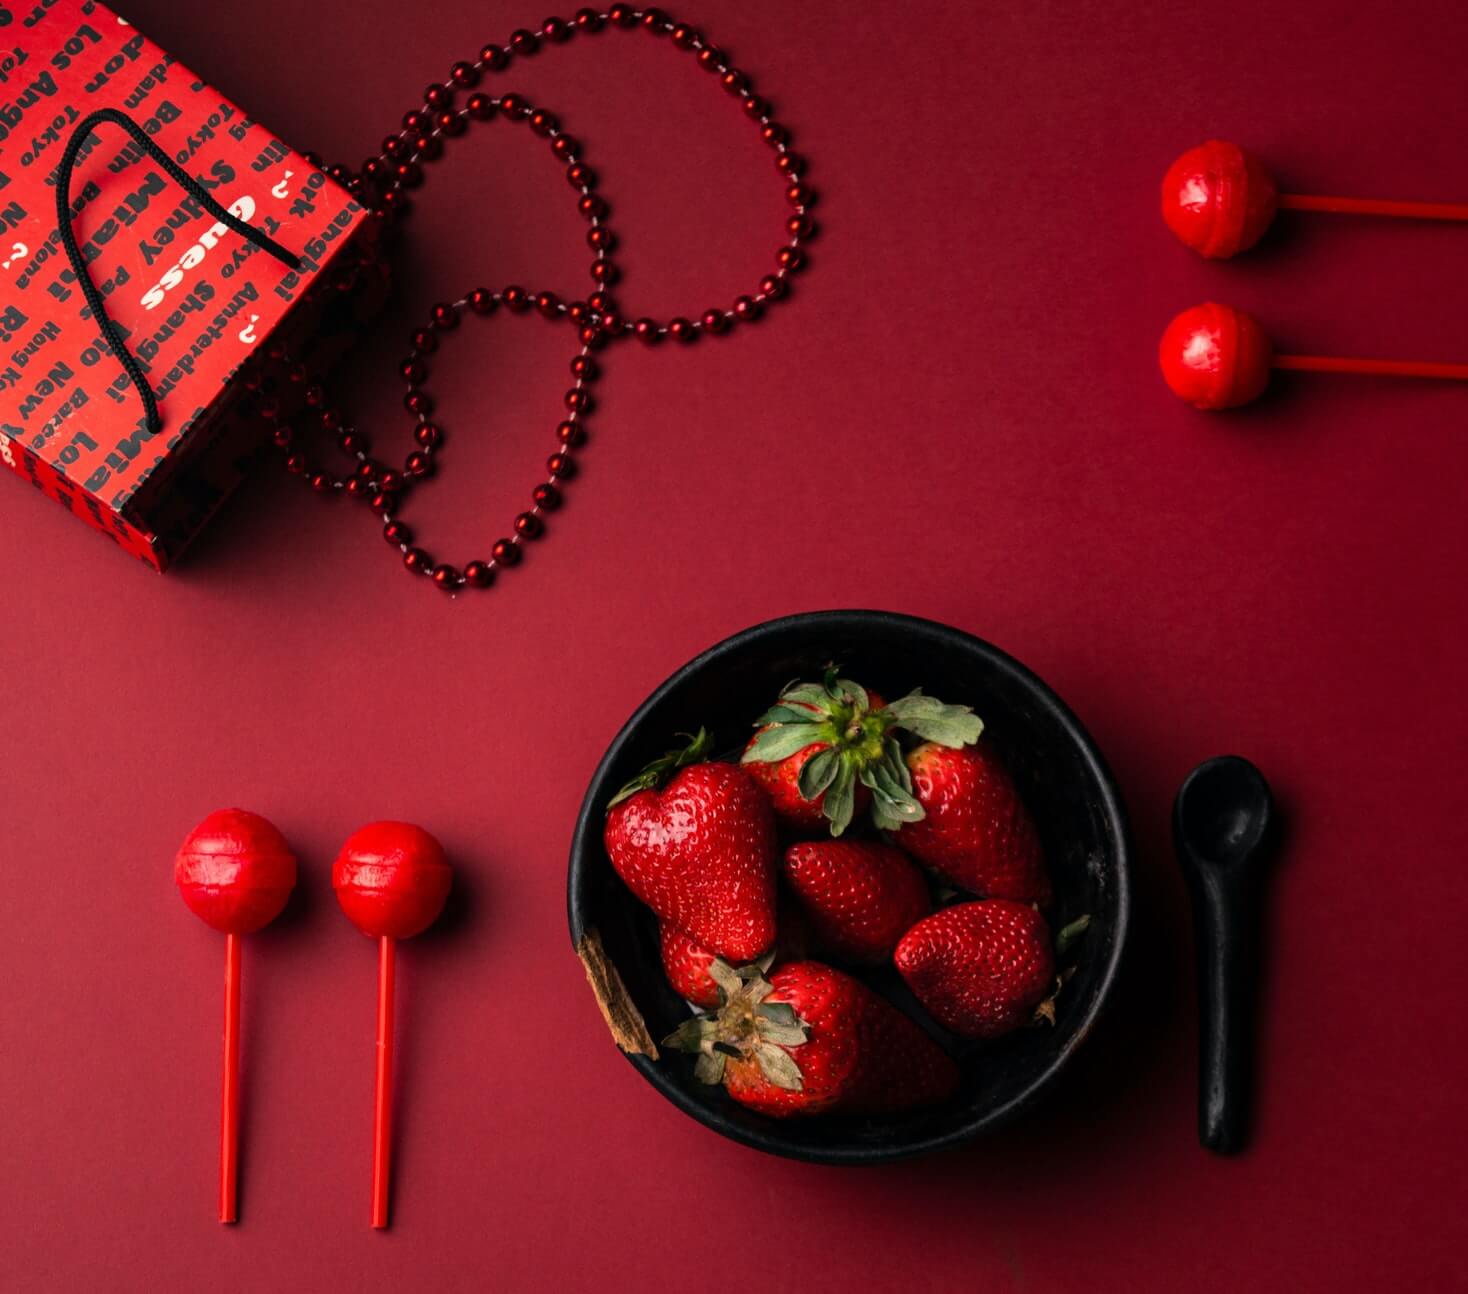 collection d'objets rouges sur fond rouge : sac en papier rouge, collier de perles rouges, sucette et bonbons rouges, fraises rouges dans un bol noir